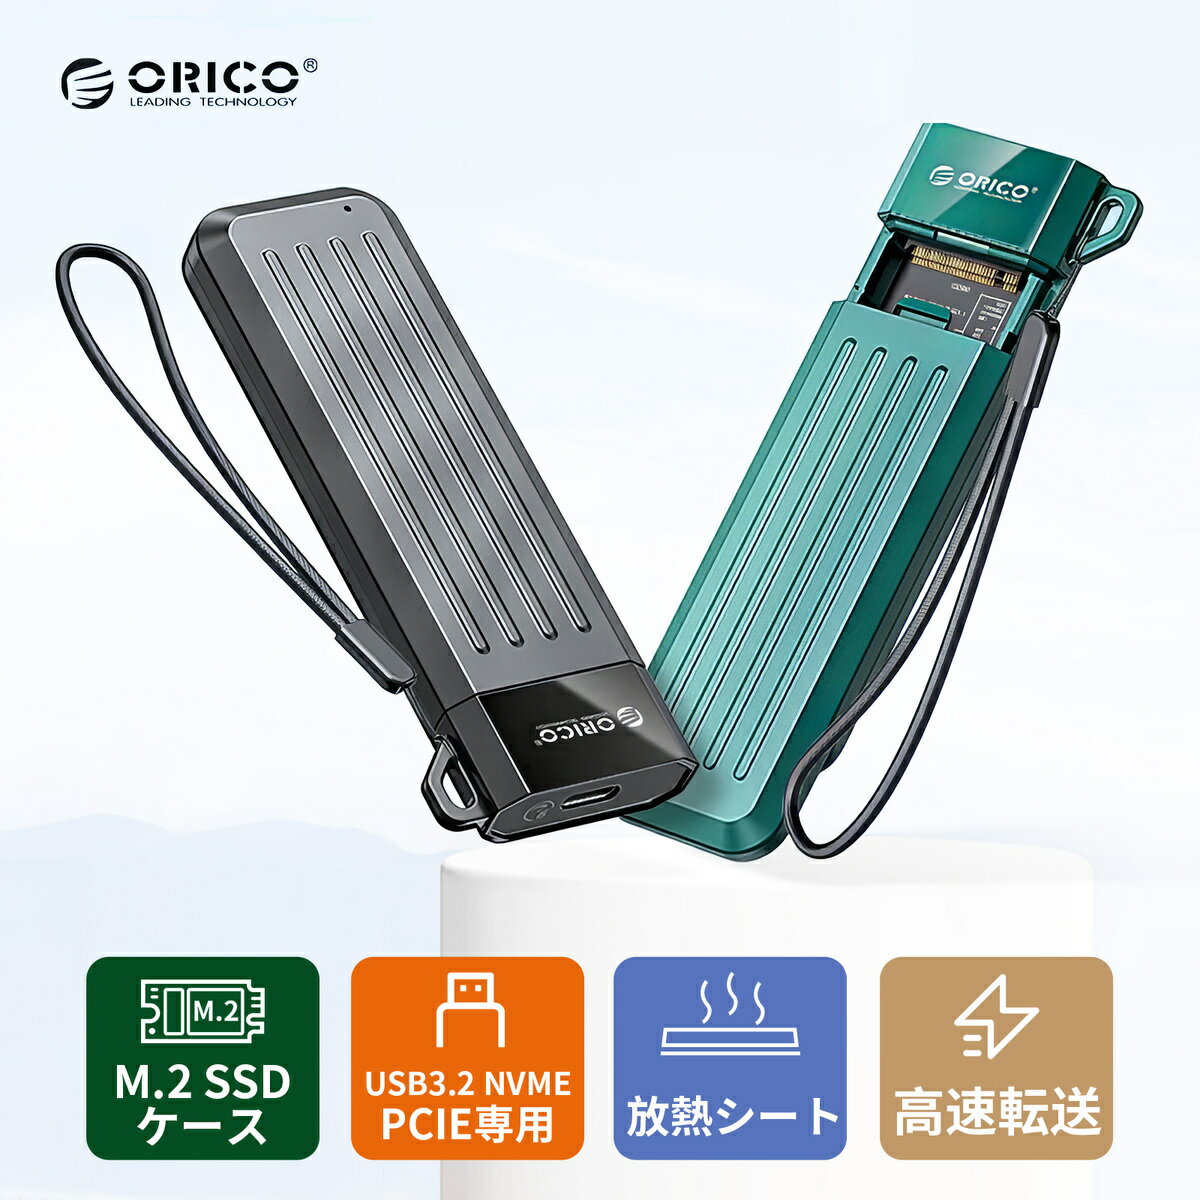 【あす楽】ORICO M.2 SSD 外付けケース SSD ケース NVME ケース NVME/PCIE専用 USB3.1Gen2接続 UASP対応 10Gbps高速転送速度 2230 2242 2260 2280 SSD M-Key / M B Keyに適用 4TB容量対応 工具が不要 2 in 1ケーブル付き MM2C3-G2